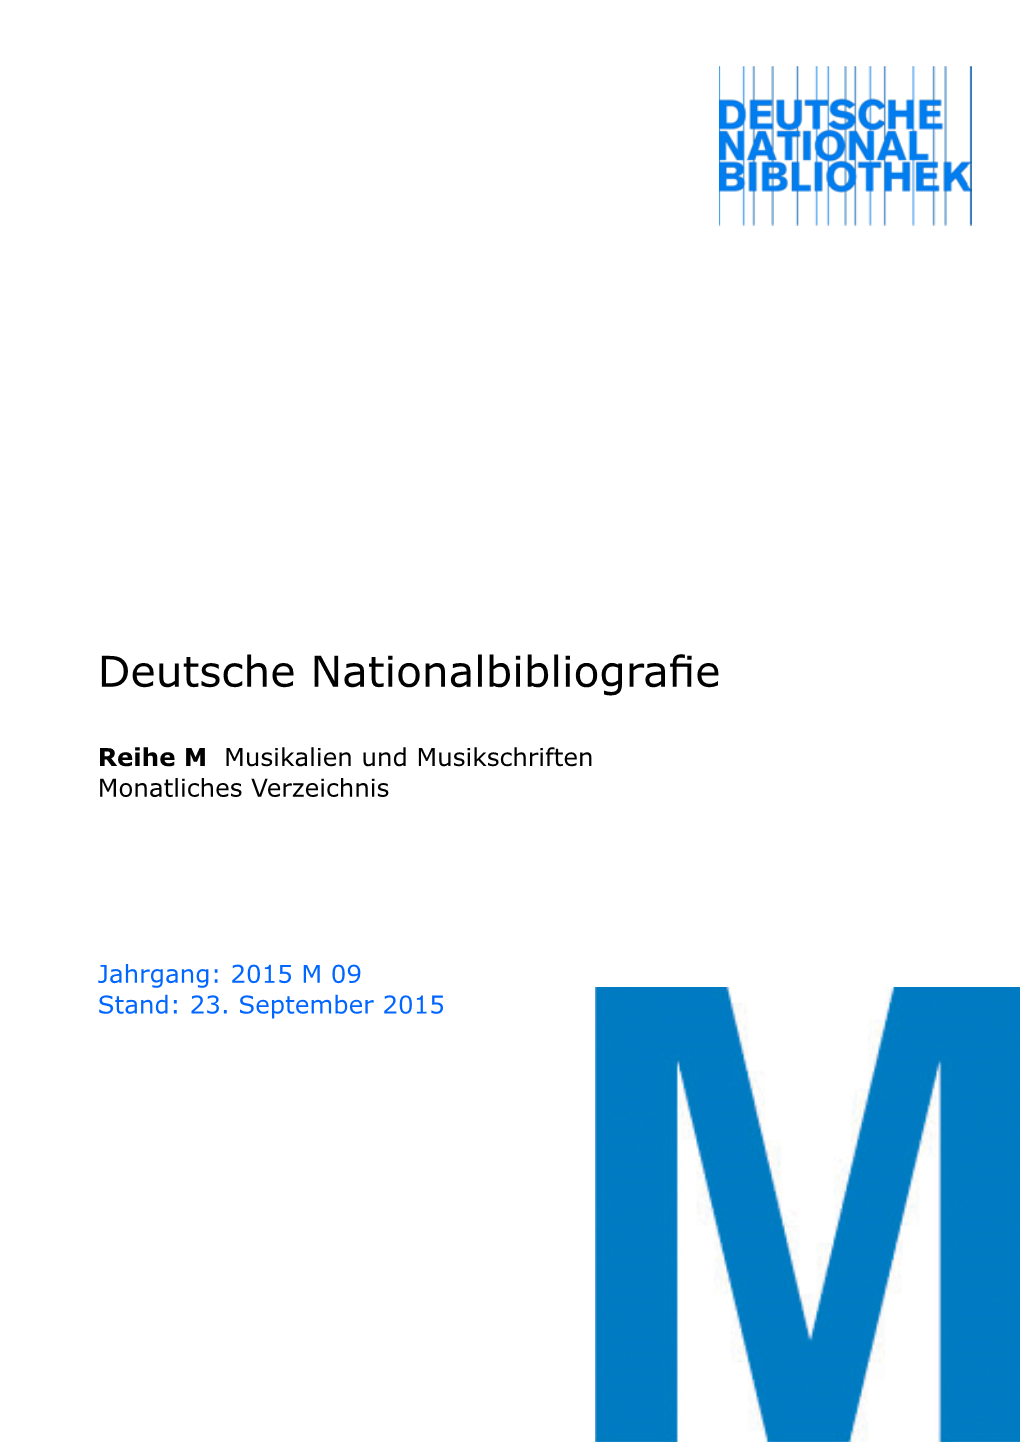 Deutsche Nationalbibliografie 2015 M 09